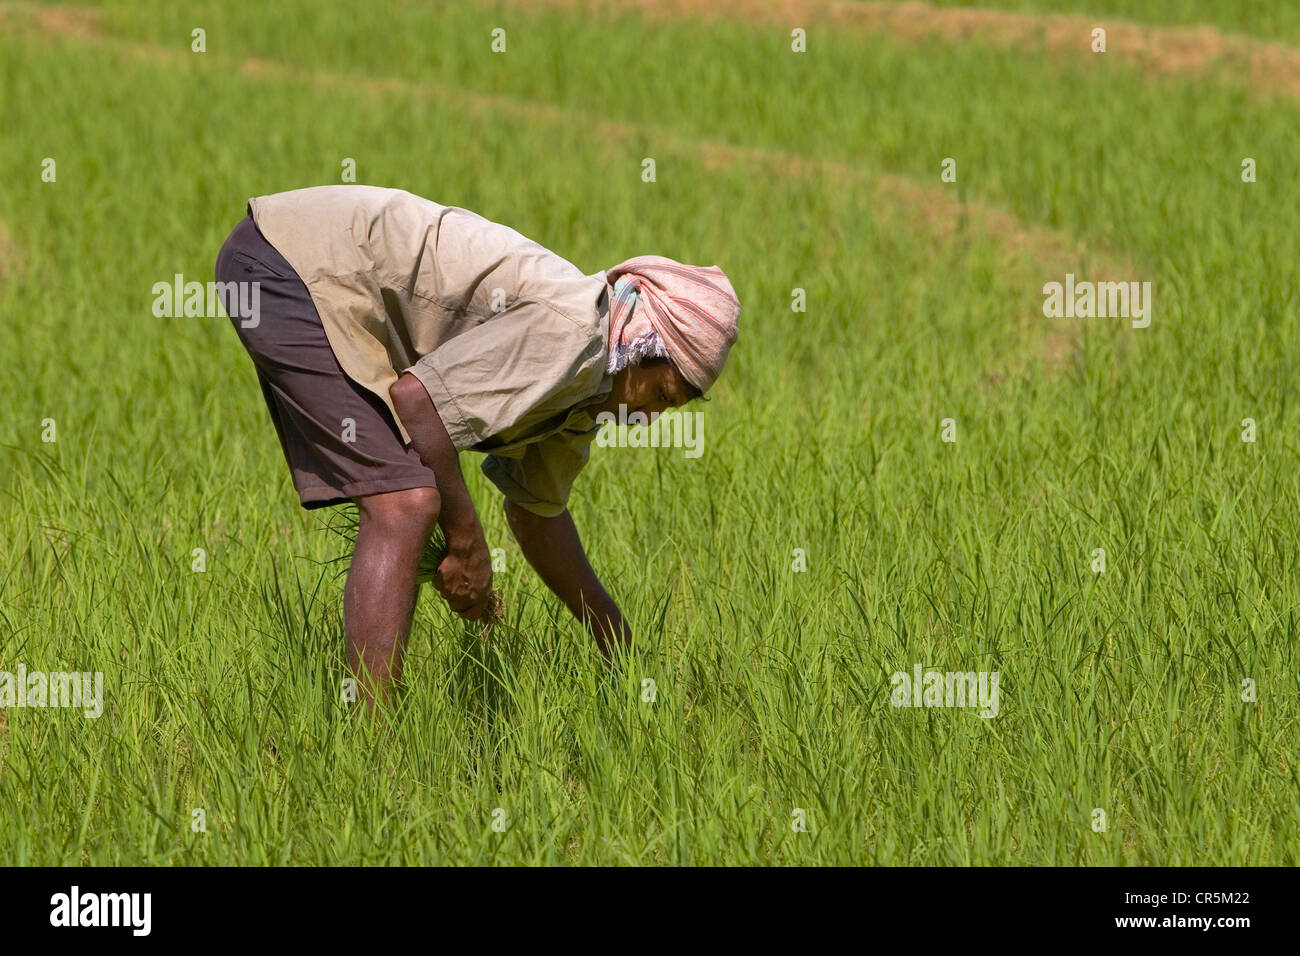 Farmer manually harvest rice from a field, Belihul Oya, Sabaragamuwa, Sri Lanka Stock Photo